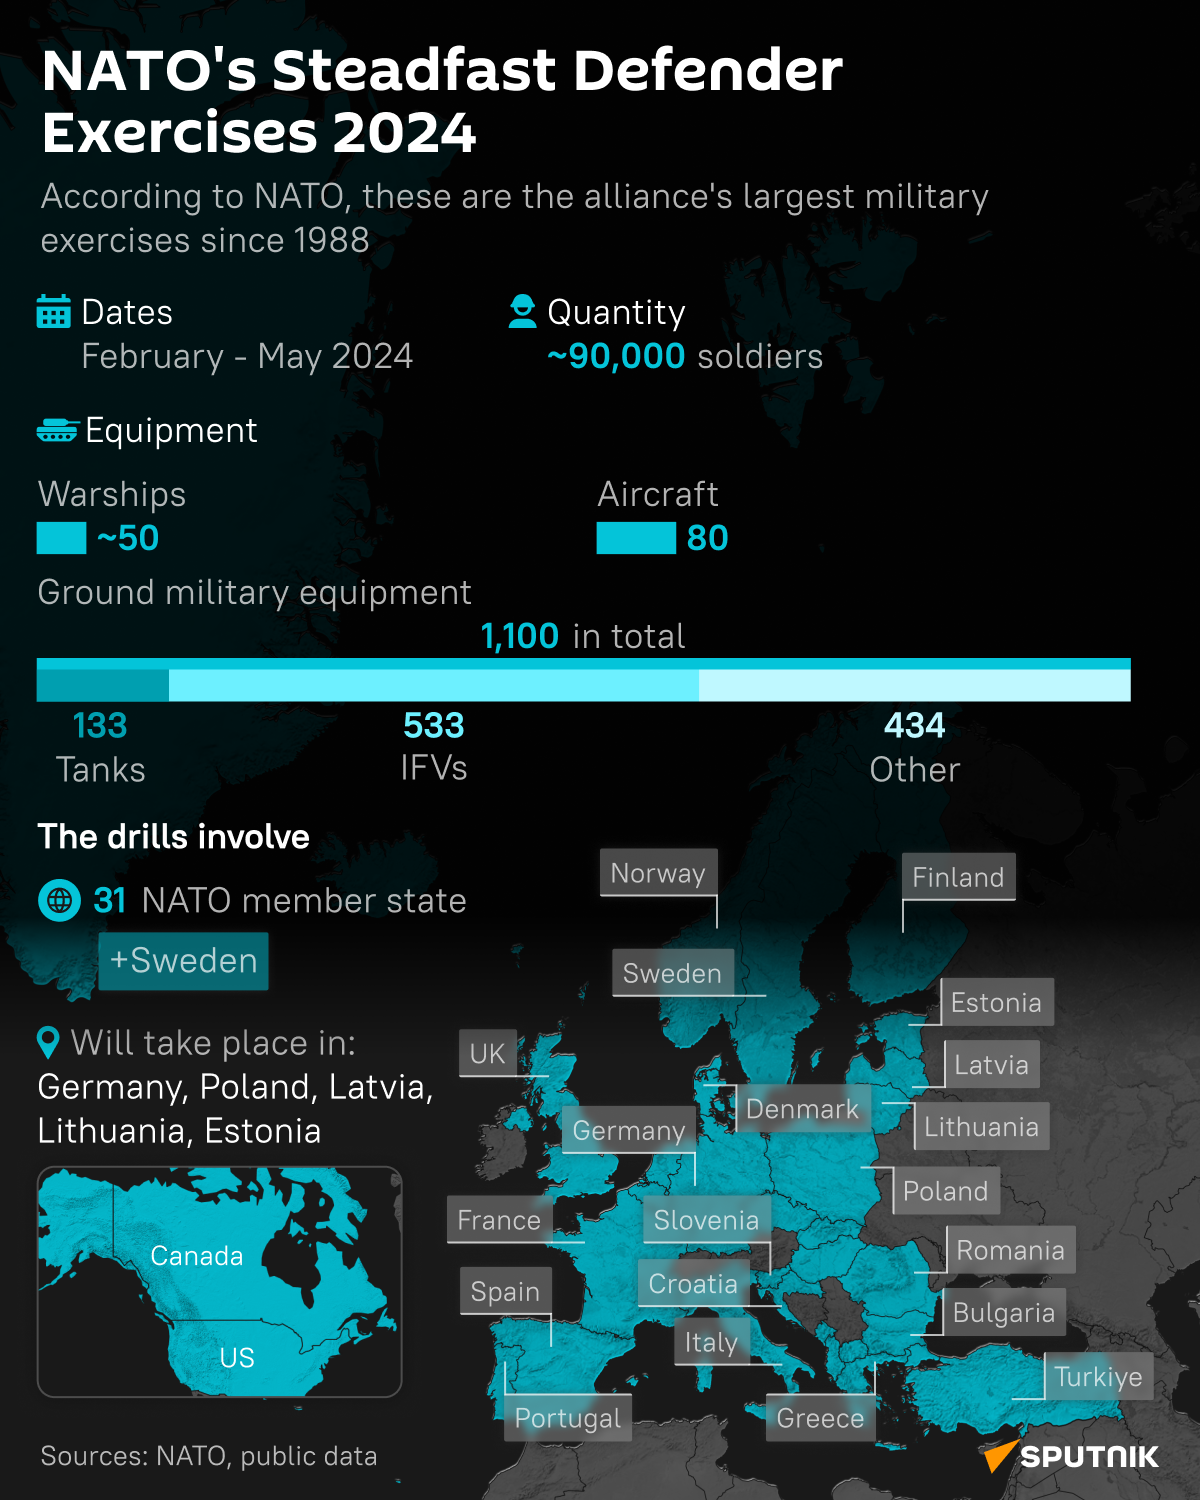 NATO Steadfast Defender Exercise 2024 - Sputnik International